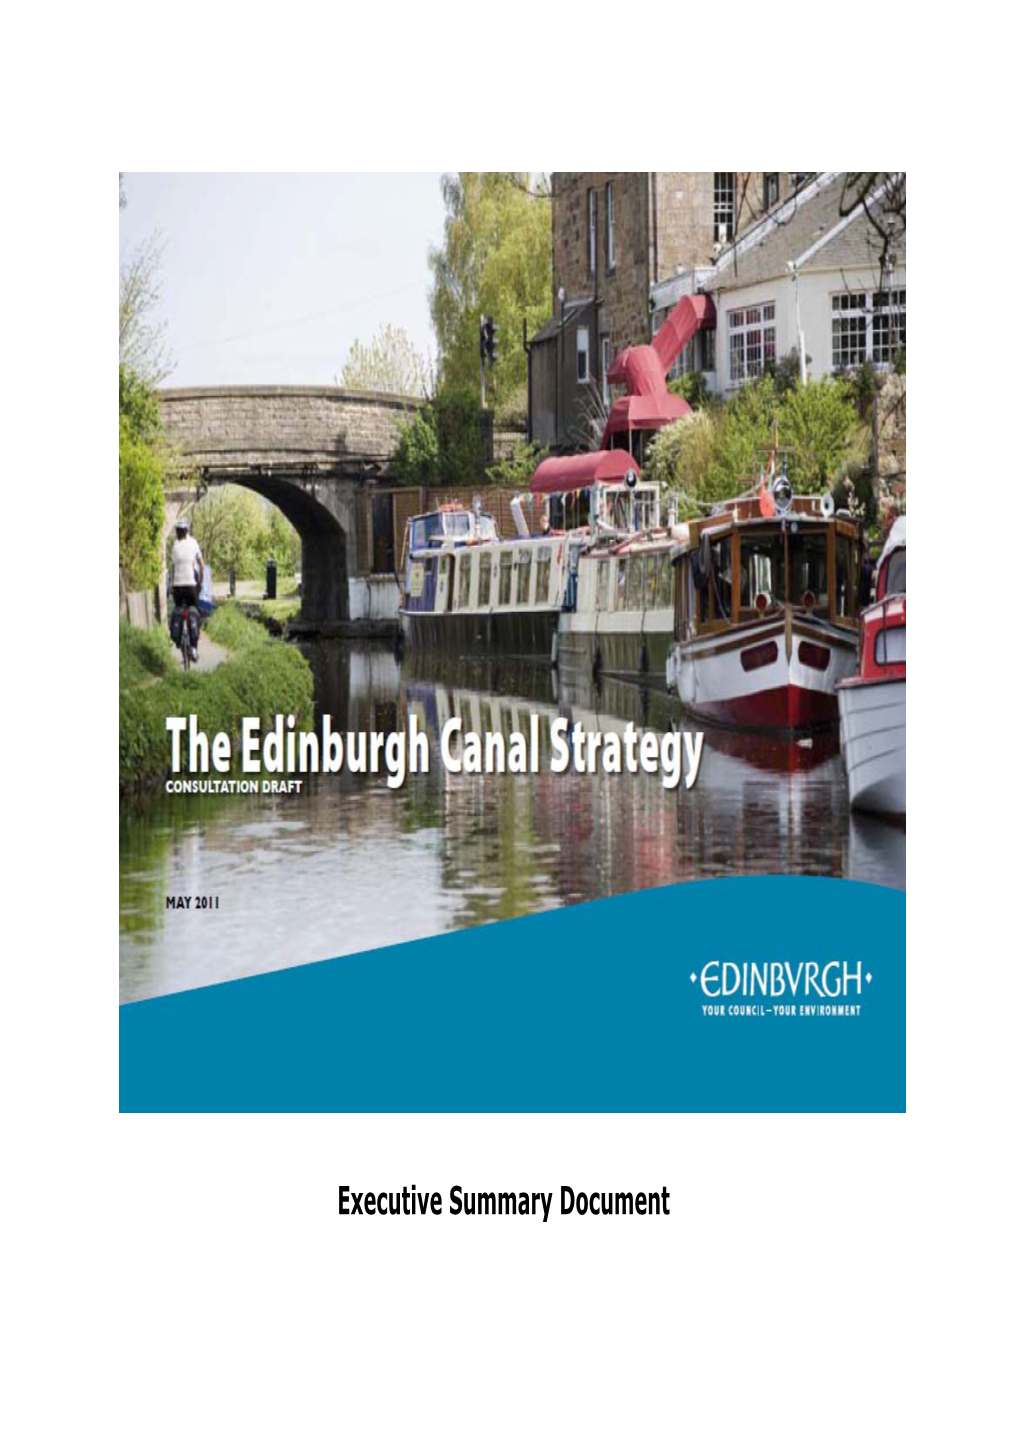 Executive Summary Document the Edinburgh Canal Strategy